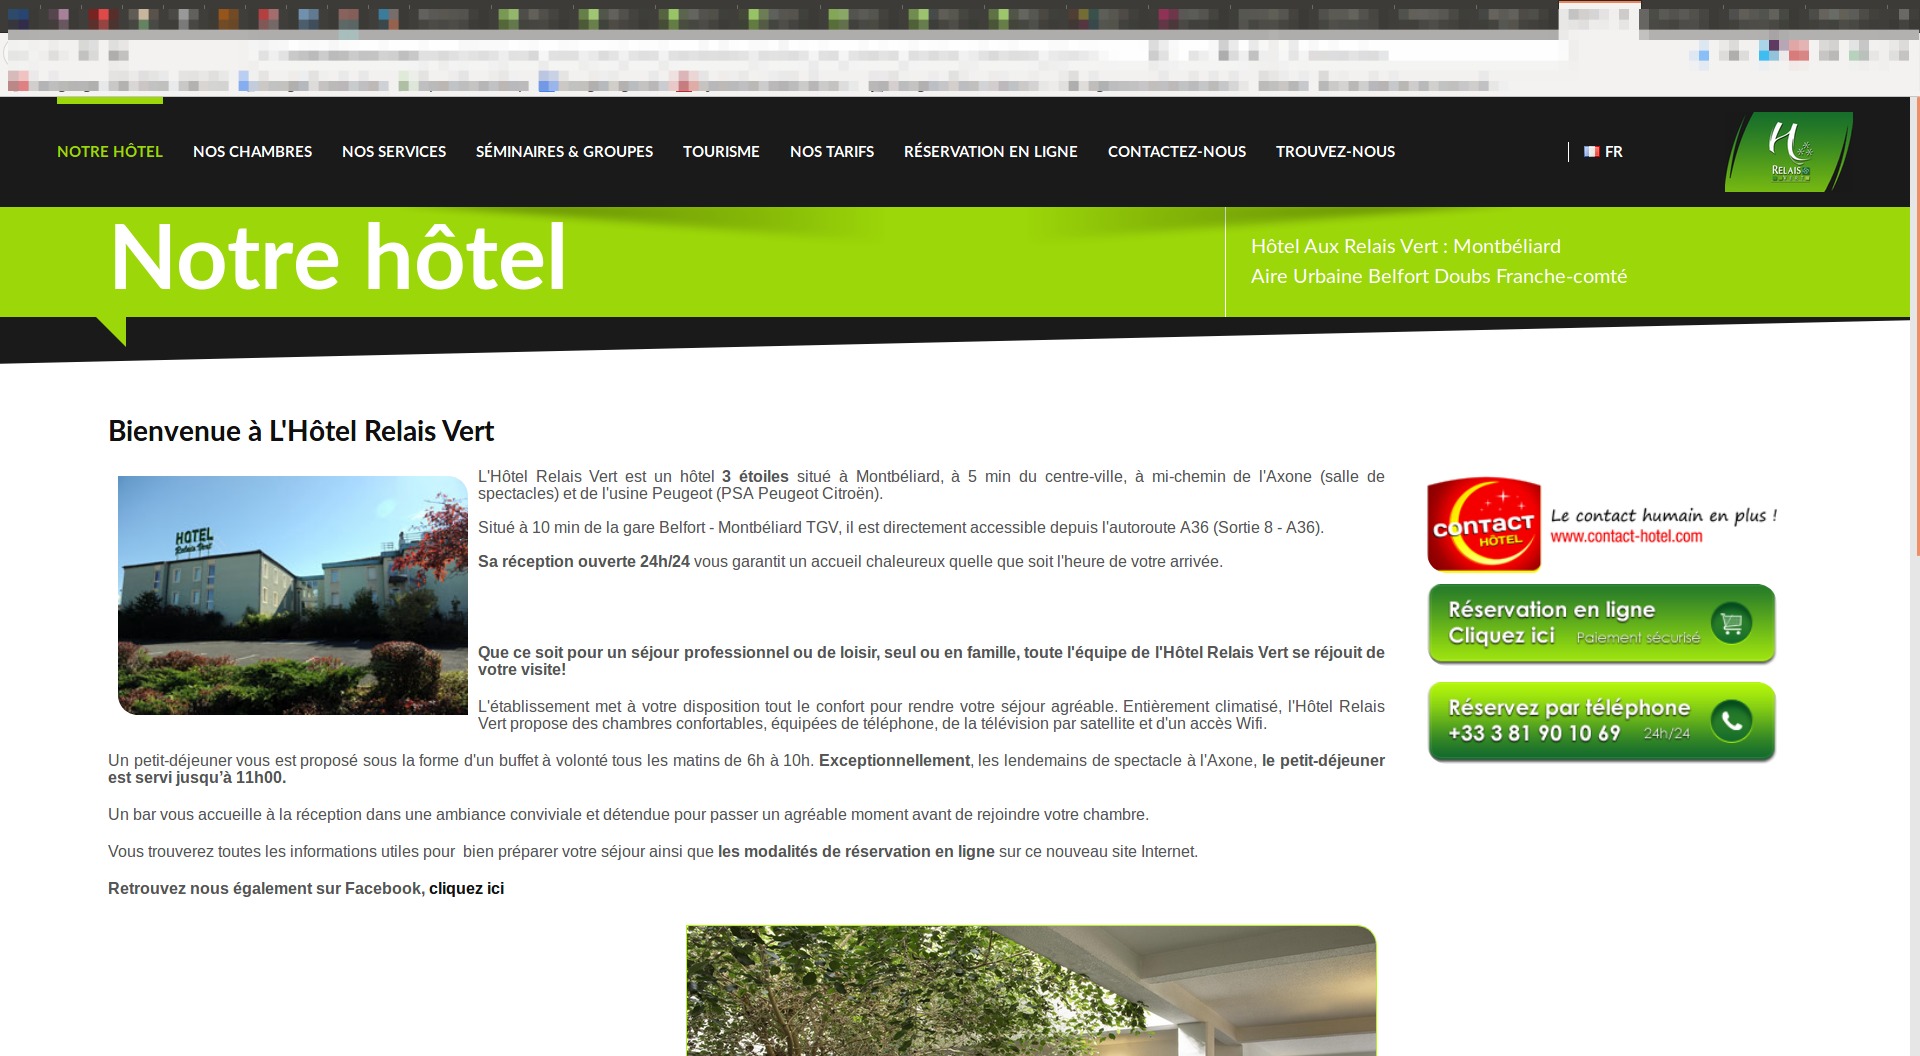 Présentation de l'hôtel et ses services<br>Réservation en ligne